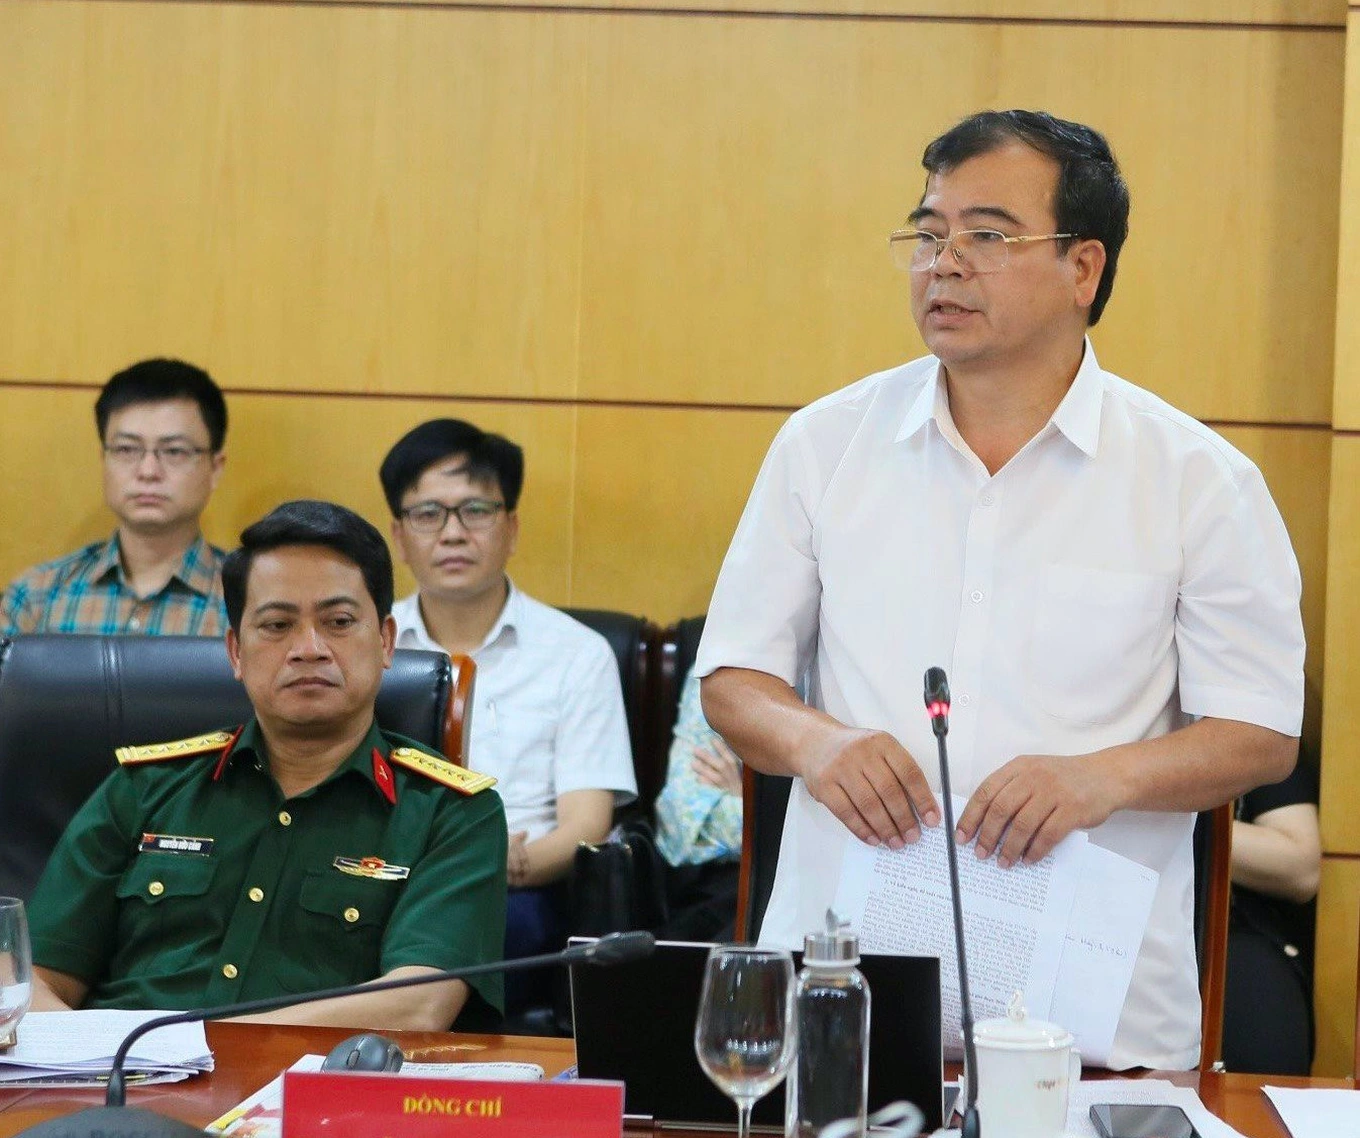 Ông Nguyễn Minh Hùng, Phó Chủ tịch UBND tỉnh Hải Dương thông tin tại cuộc họp (Ảnh: Nguyễn Thủy).